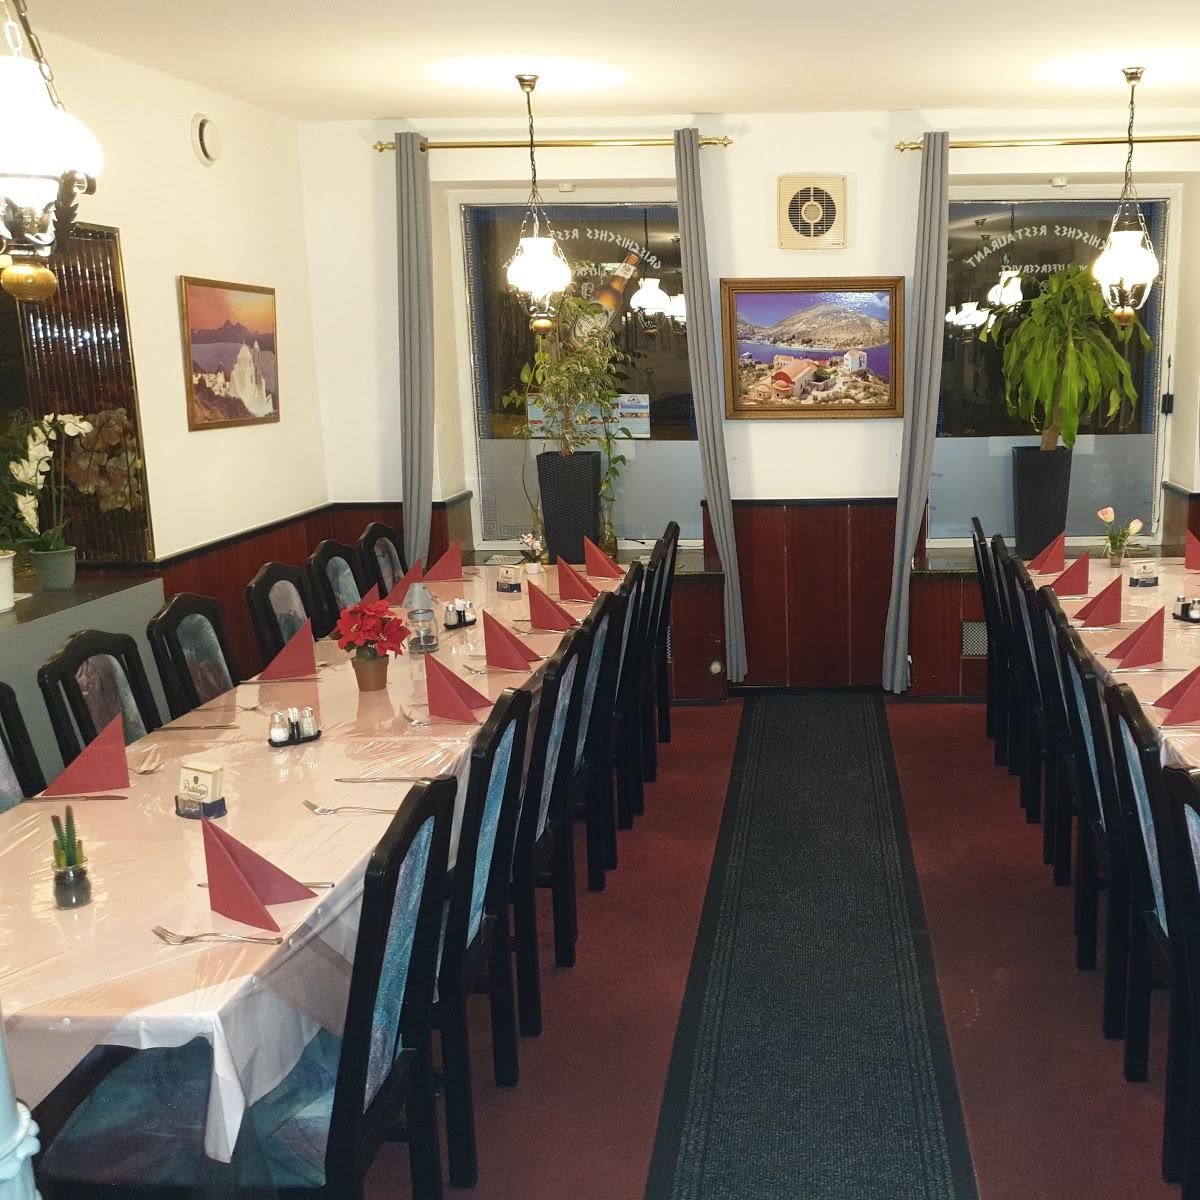 Restaurant "Athen Grillhaus" in Weißenfels